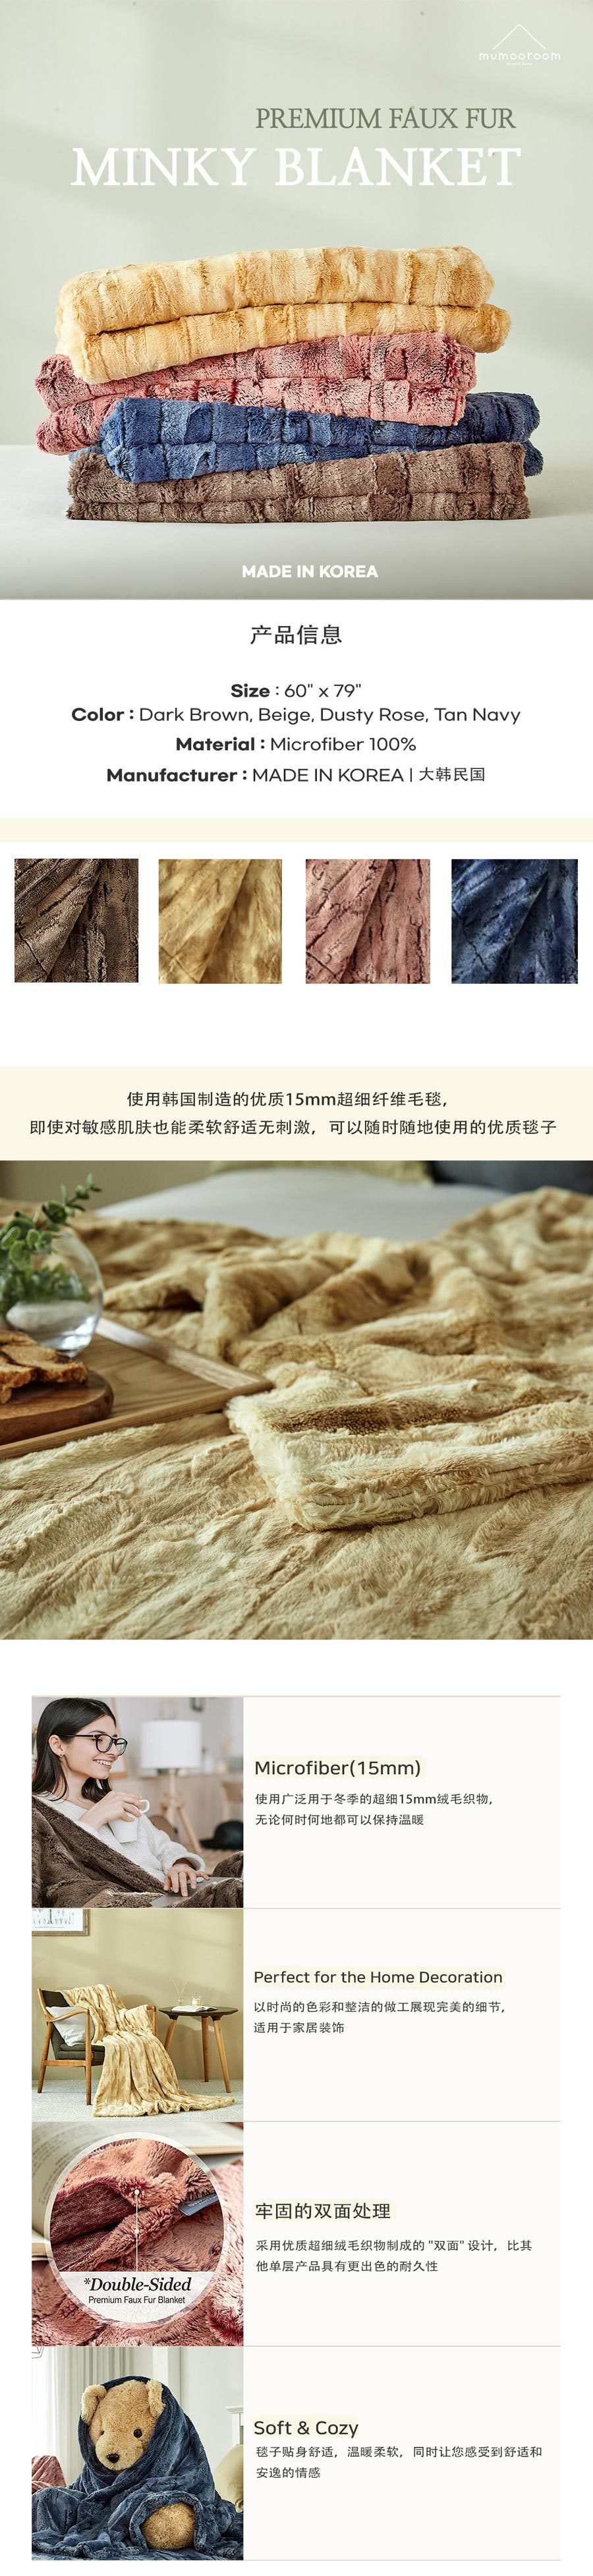 韩国 制造的高级仿貂绒 MINKY 毯 - BEIGE